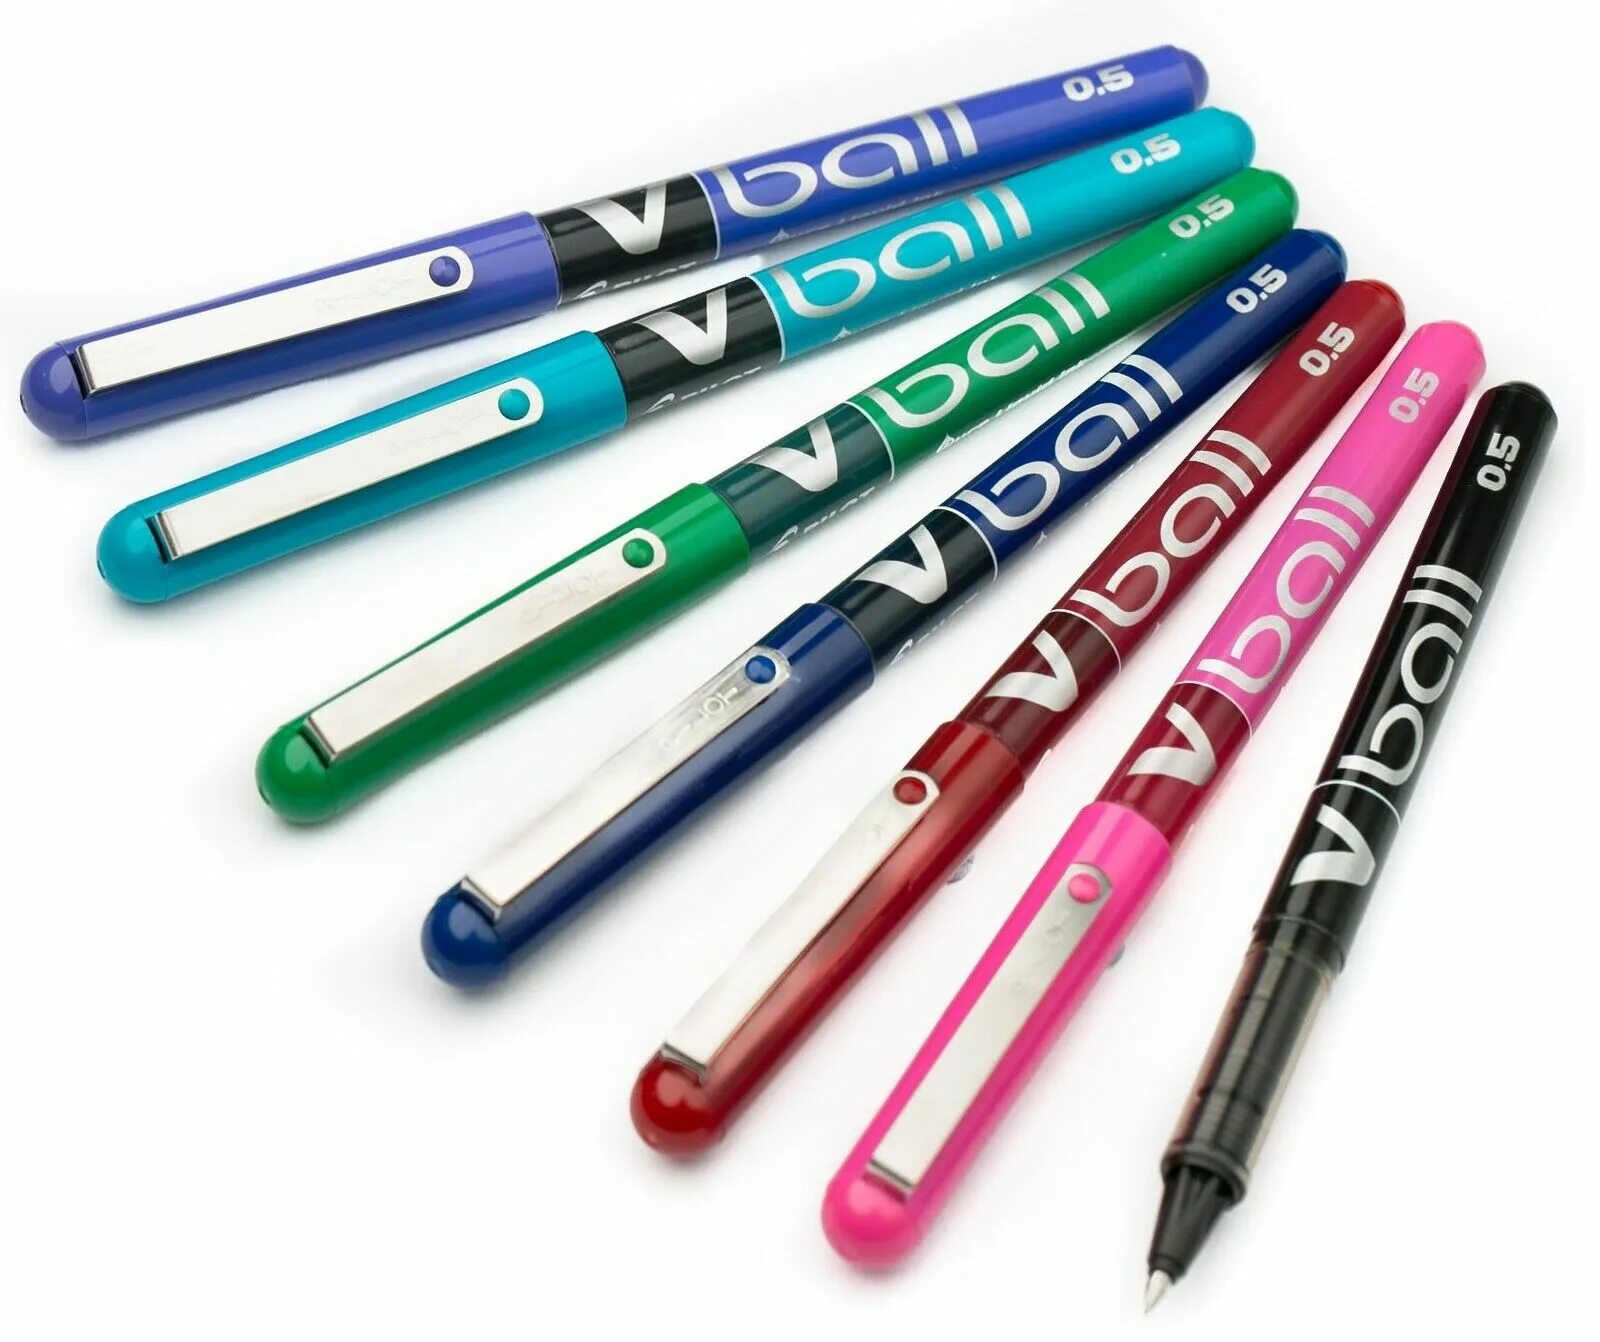 Roller ball 5. Pilot Pen v Ball. Ручка Pilot v-Ball 07 Black Pure Liquid Ink. Roller Ball Pen 0.5 мм. Ручка Pilot v-Ball Pure Liquid Ink 0.5 Blue.